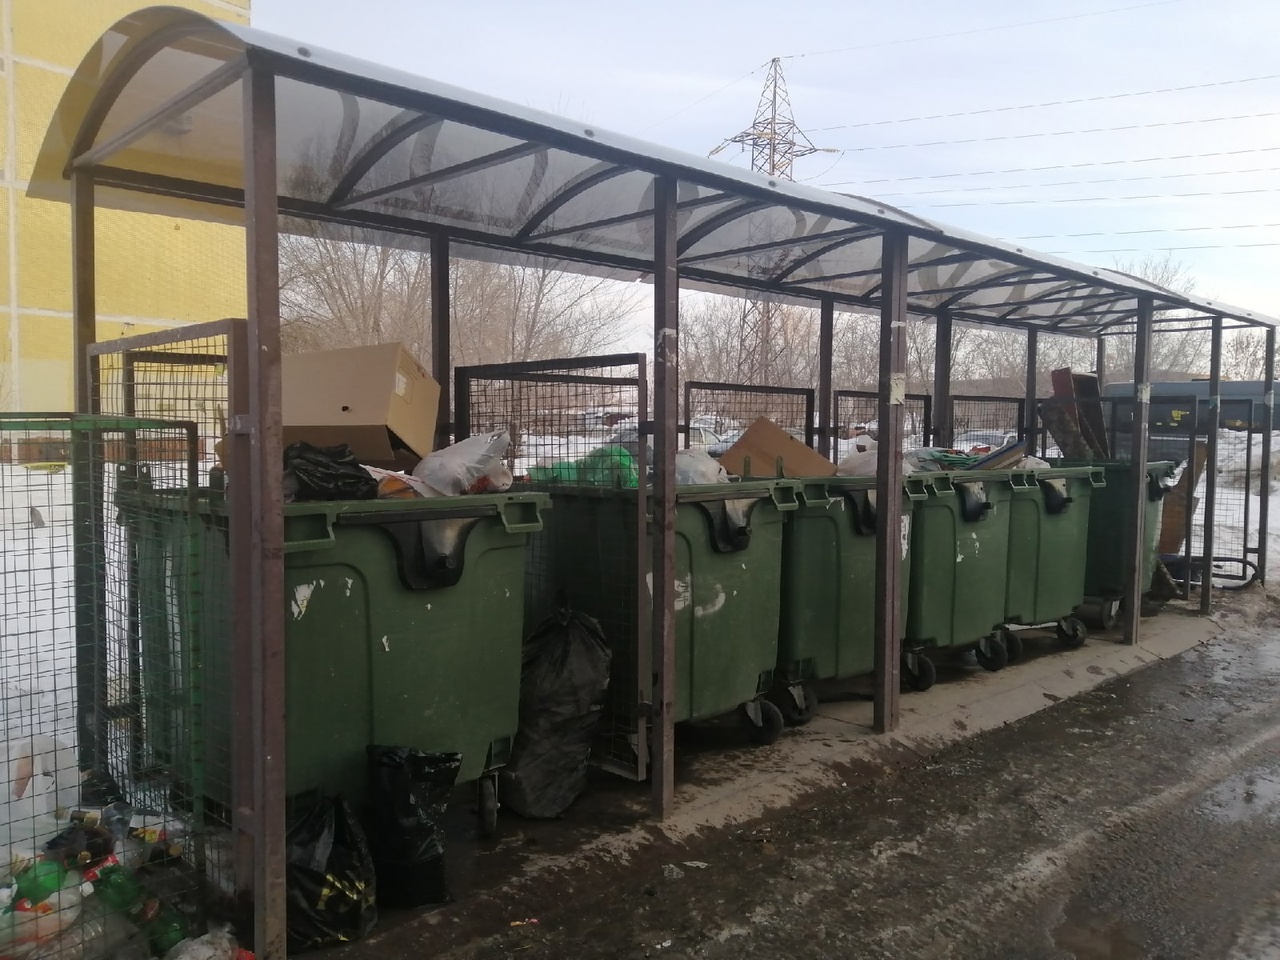  Глава региона изучил функционал нового комплекса по переработке мусора, построенного в Тольятти 